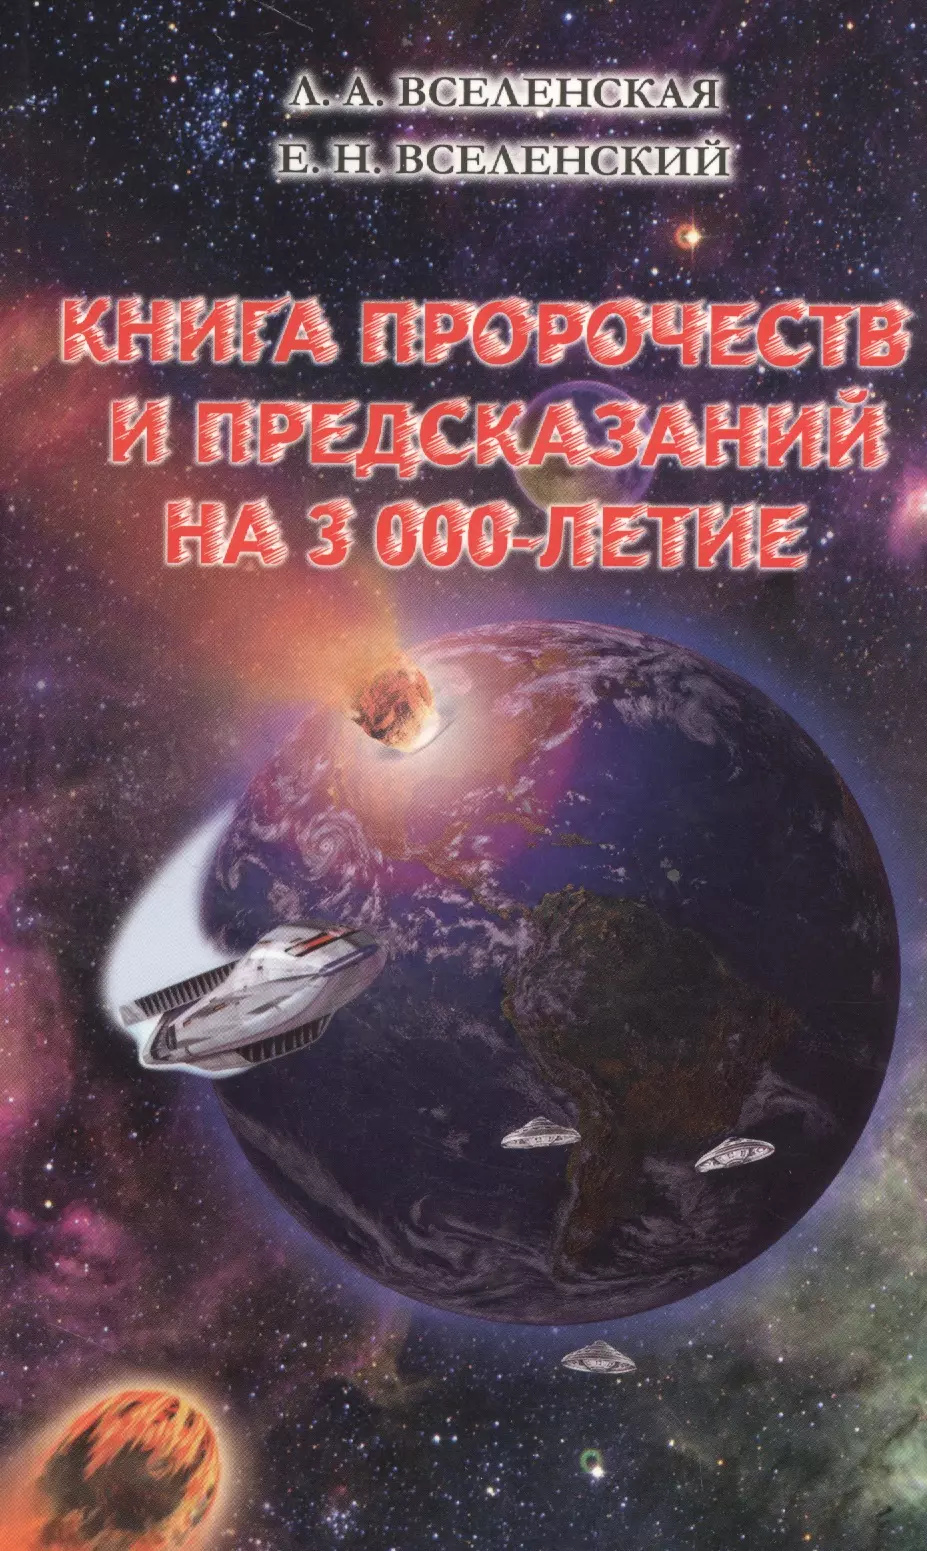 Вселенская Л.А., Вселенский Е.Н. Книга пророчеств и предсказаний на 3000-летие